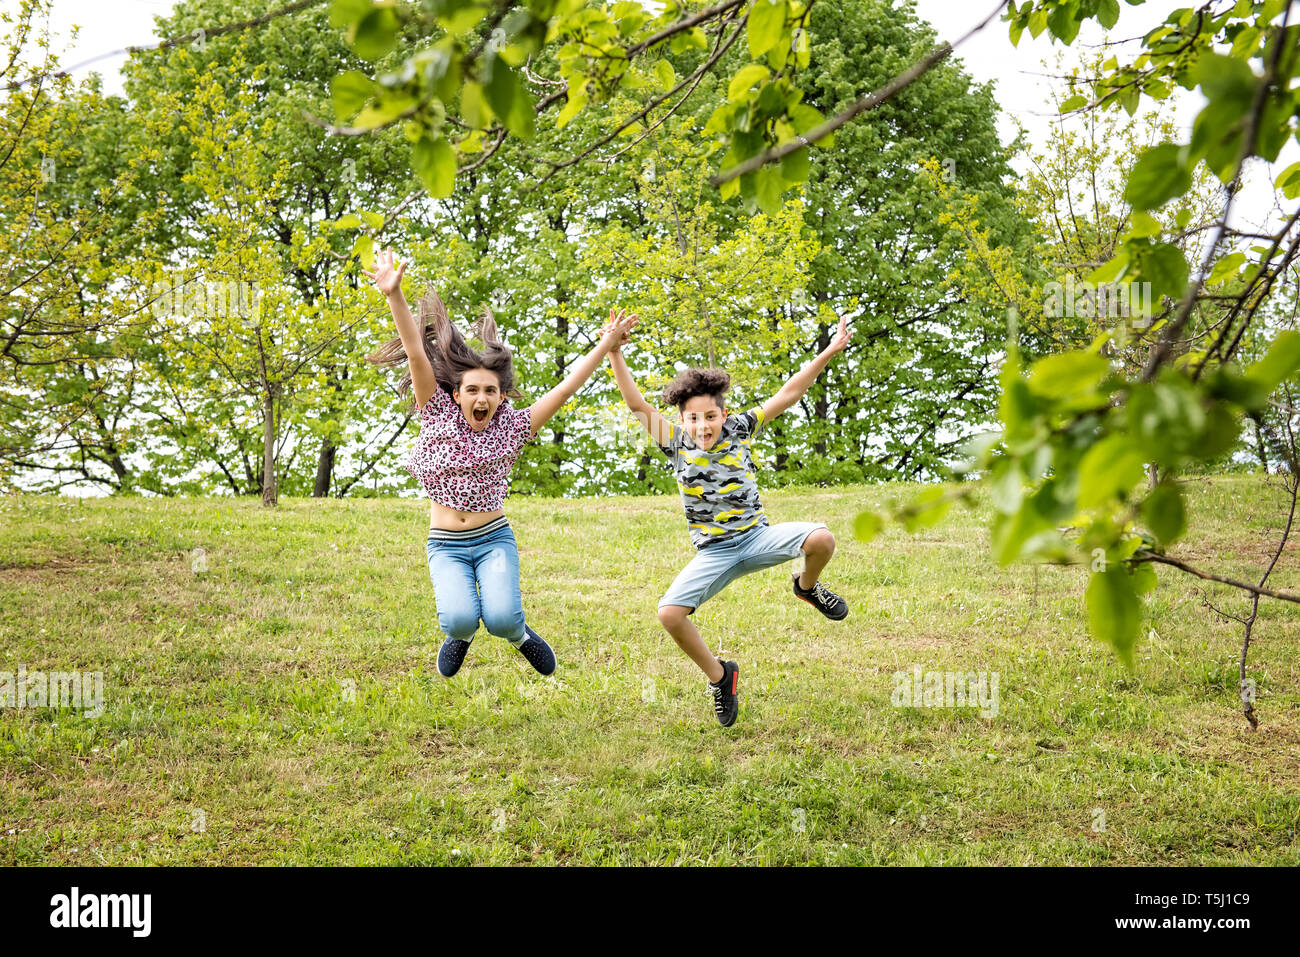 Carino energico giovane fratello e sorella saltando insieme in un parco alberato in primavera per celebrare le giornate più calde Foto Stock